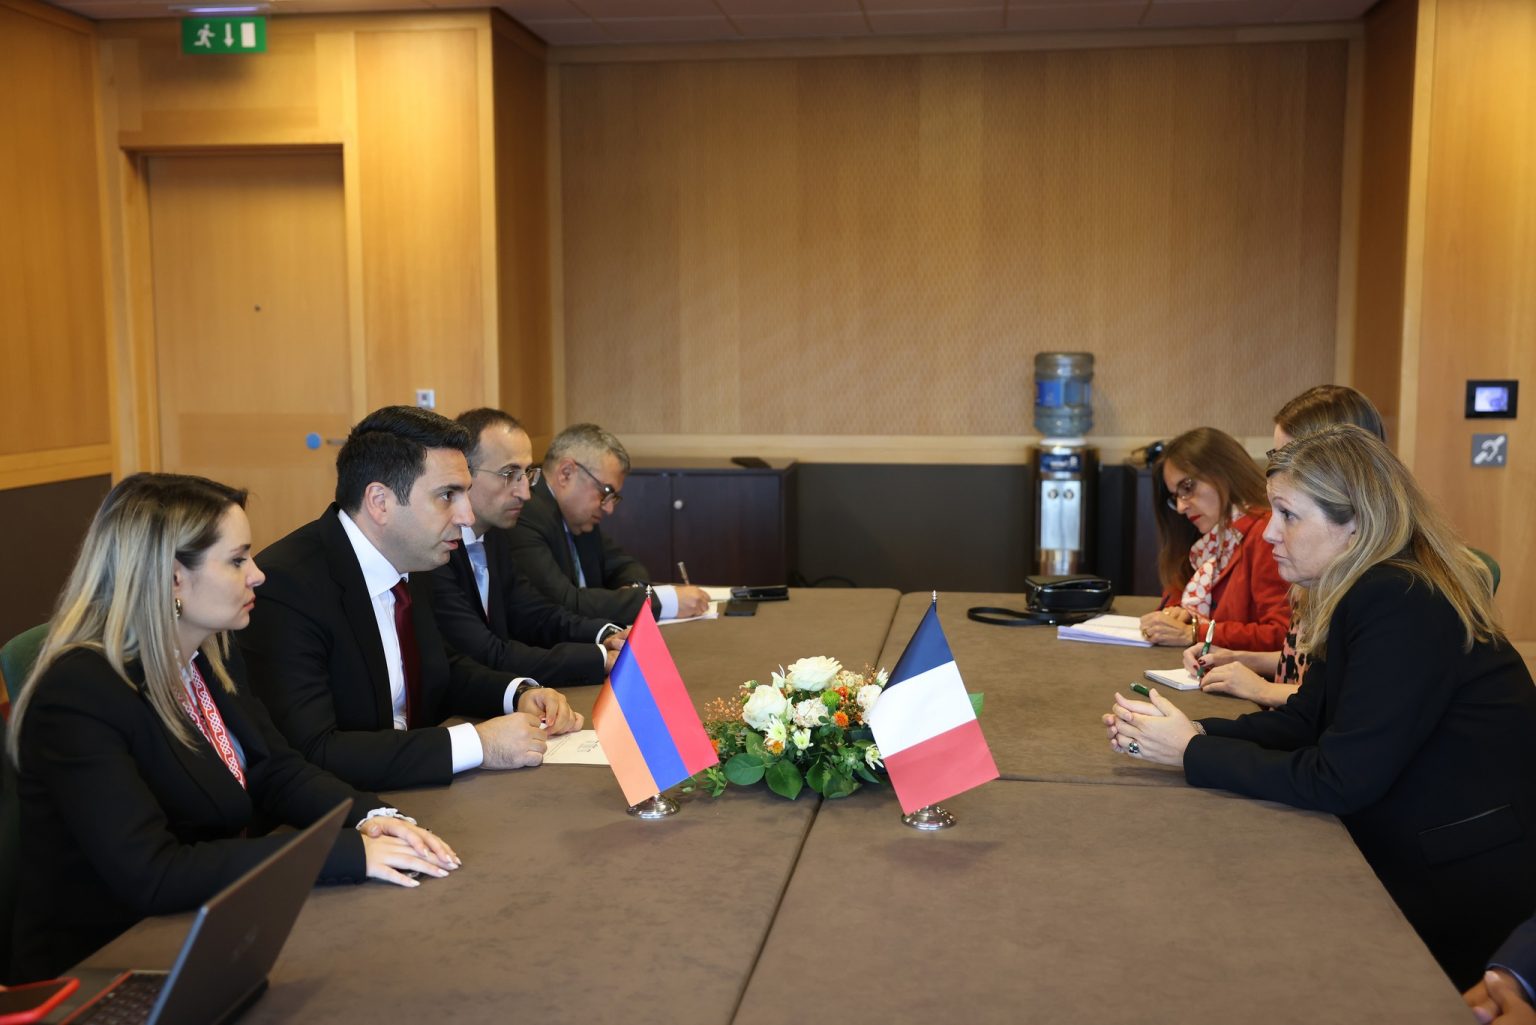 ՀՀ և Ֆրանսիայի ԱԺ նախագահների հանդիպմանը մտքեր են փոխանակվել Ադրբեջանի դեմ միջազգային պատժամիջոցների կիրառման անհրաժեշտության մասին